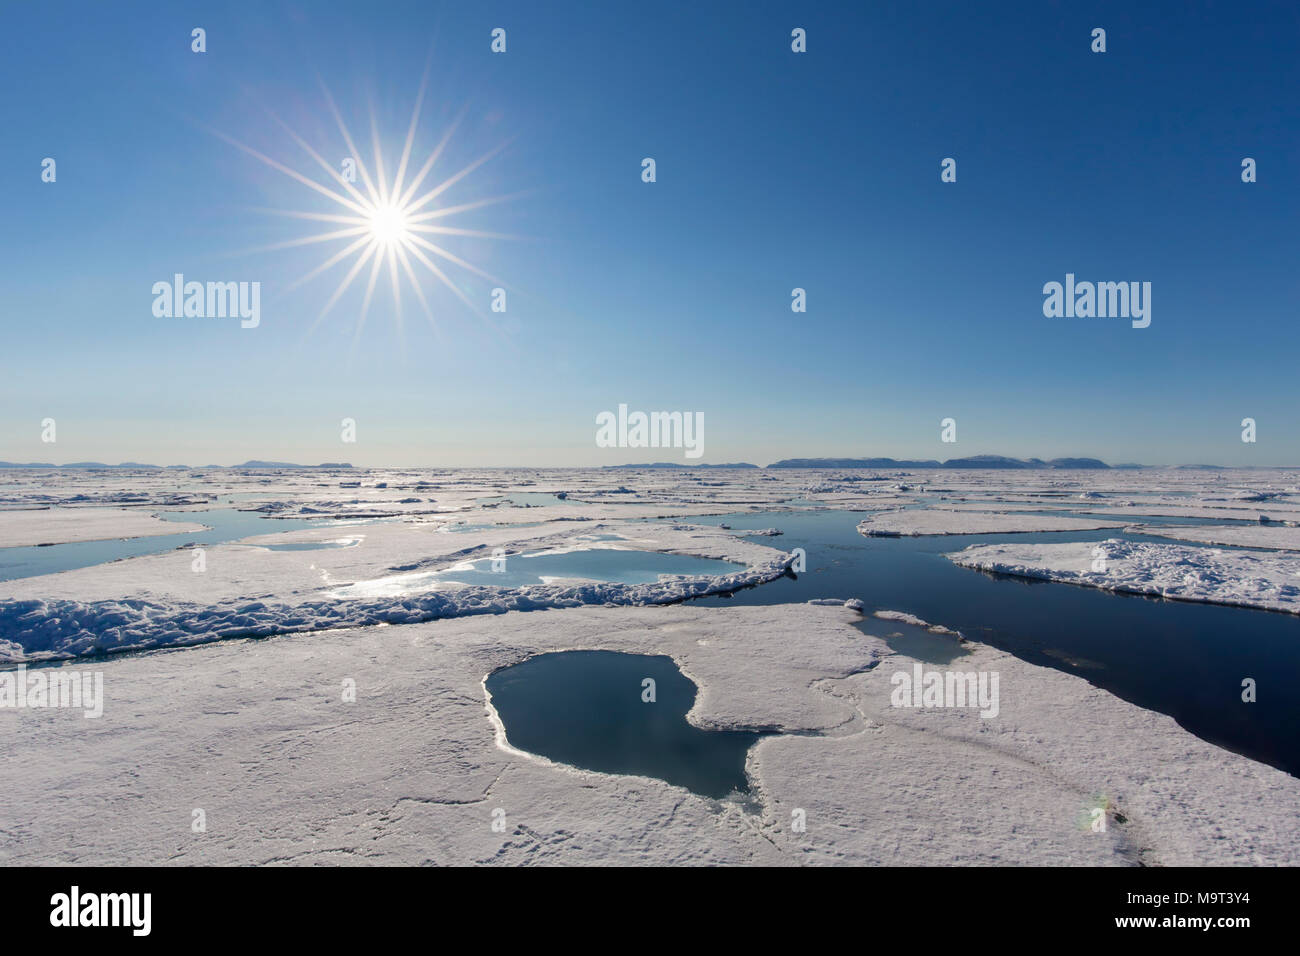 Soleil de minuit au-dessus de l'océan Arctique avec des blocs de glace à la dérive, au nord du Cercle arctique à Nordaustlandet Svalbard, Norvège, Spitzberg / Banque D'Images